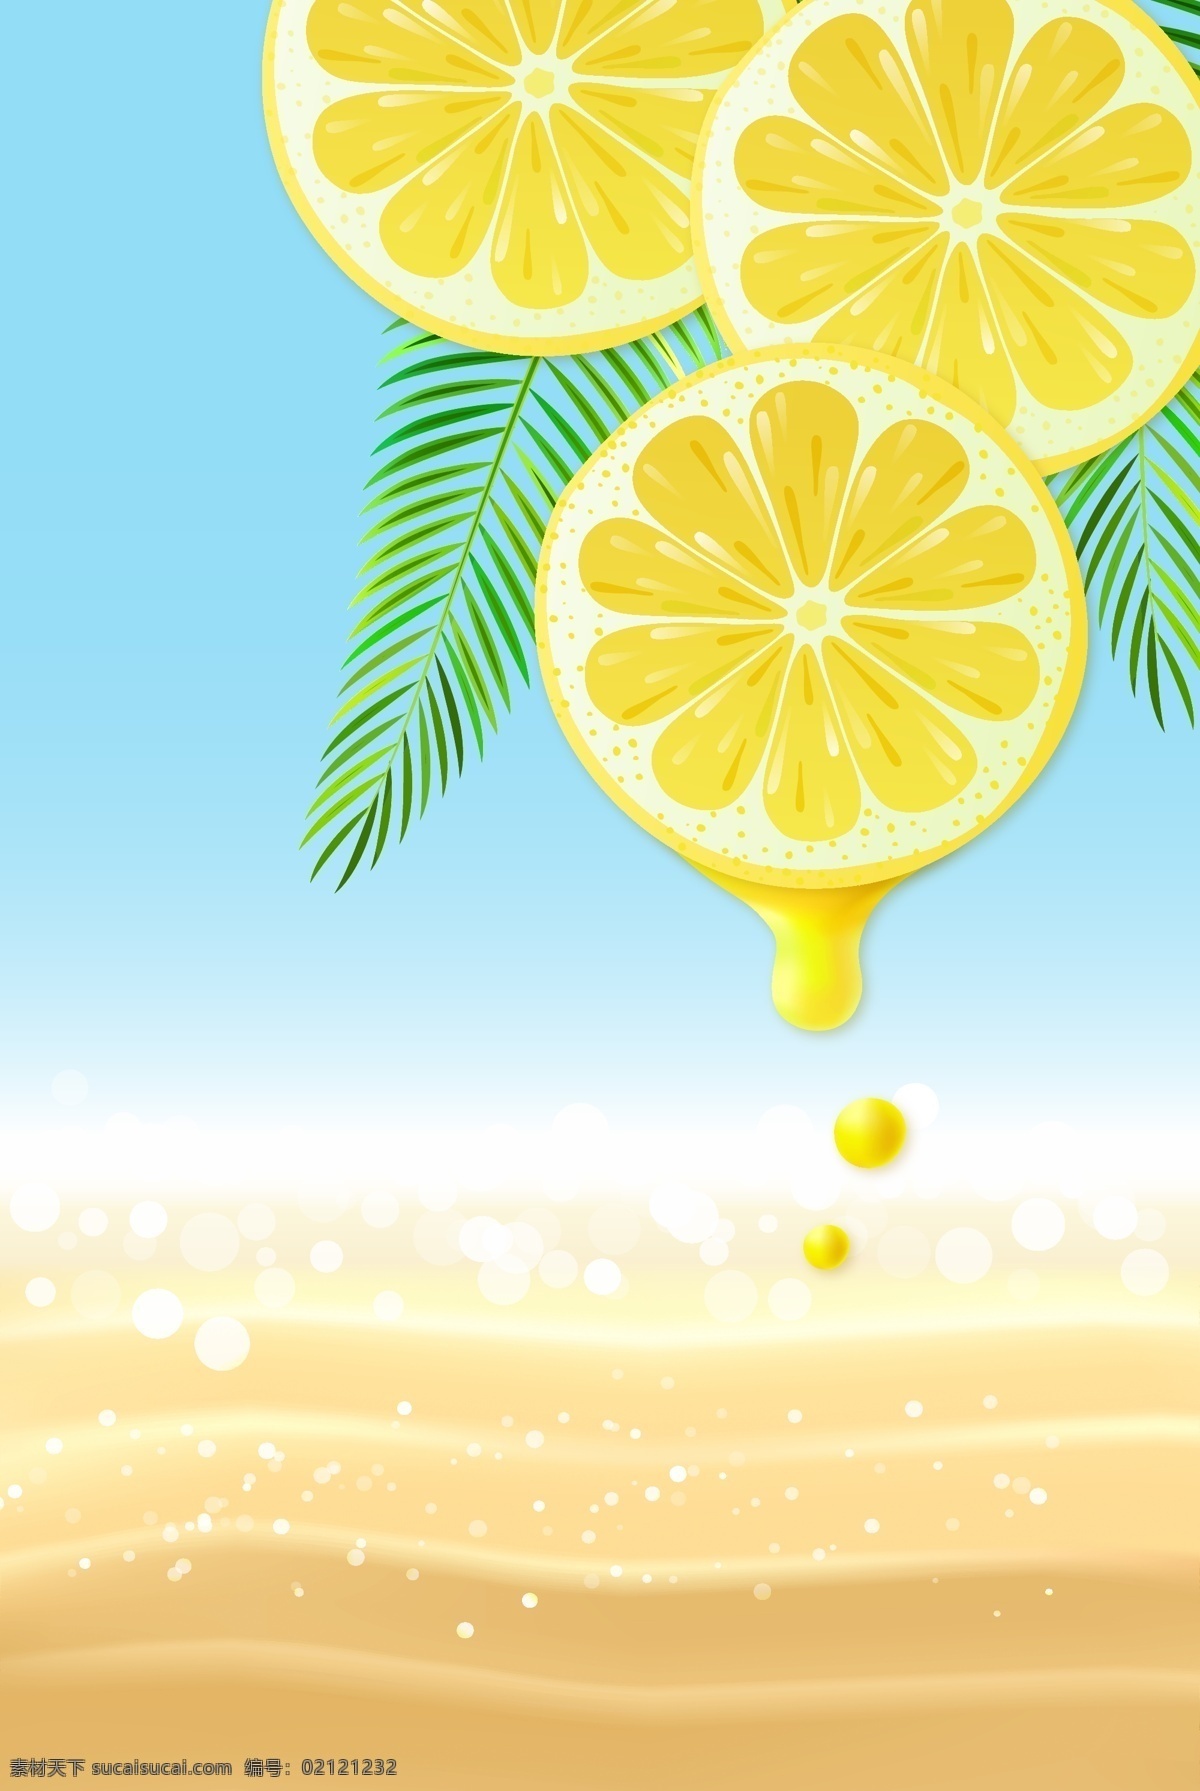 矢量 文艺 质感 手绘 柠檬 水果 背景 卡通手绘 海报 水彩手绘 夏天 夏日清新 沙滩海洋 夏日冷饮